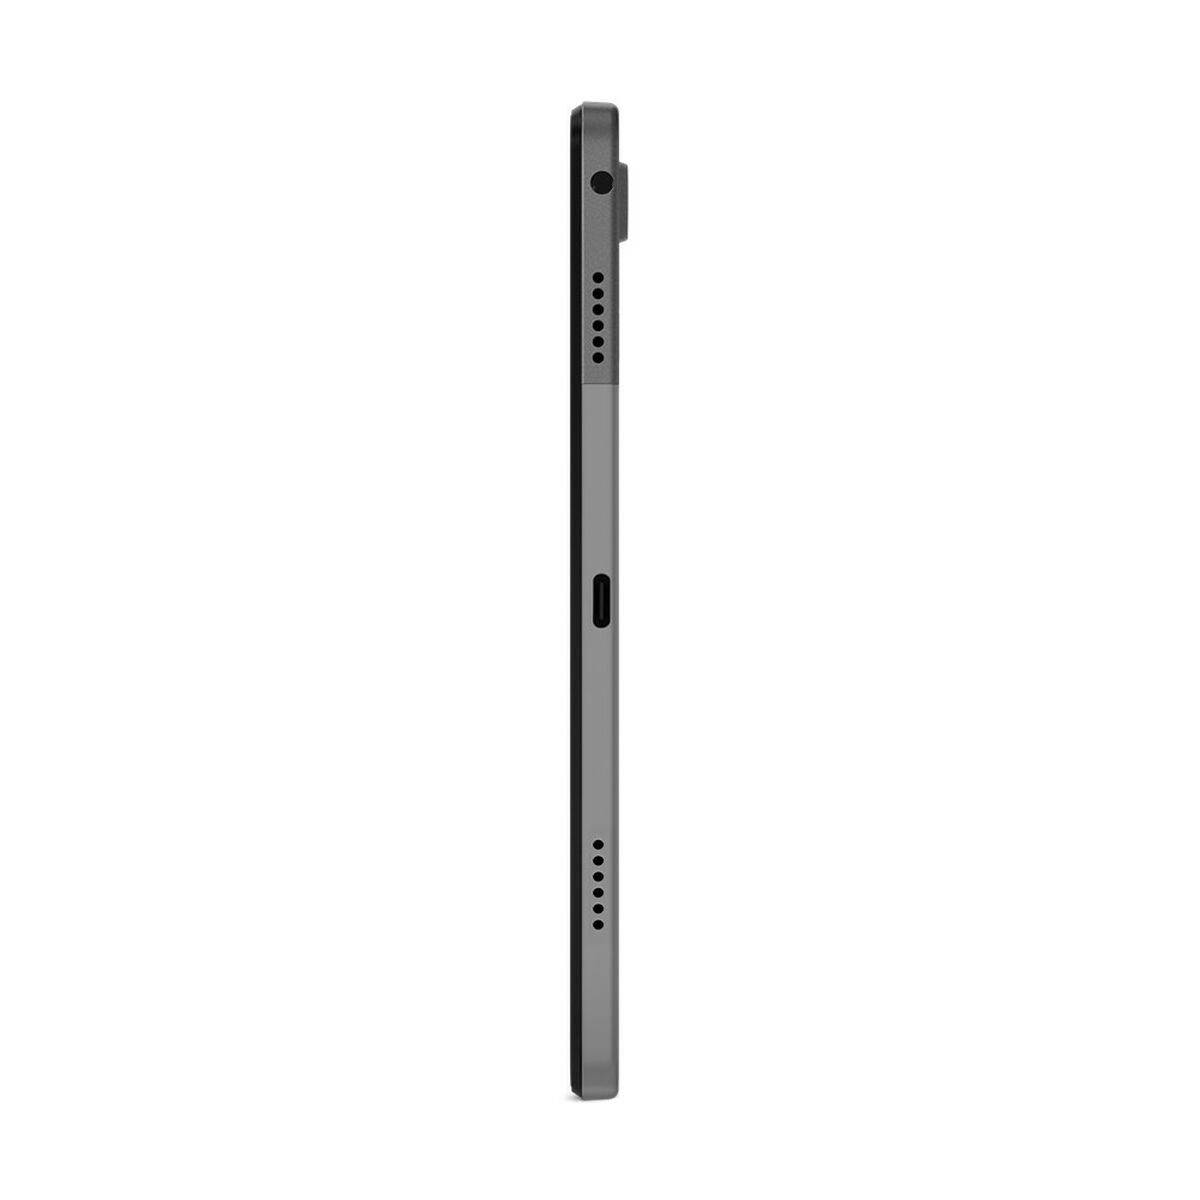 Tablet Lenovo Tab M10 Plus 4G LTE 10,6" Qualcomm Snapdragon 680 4 GB RAM 128 GB Grey